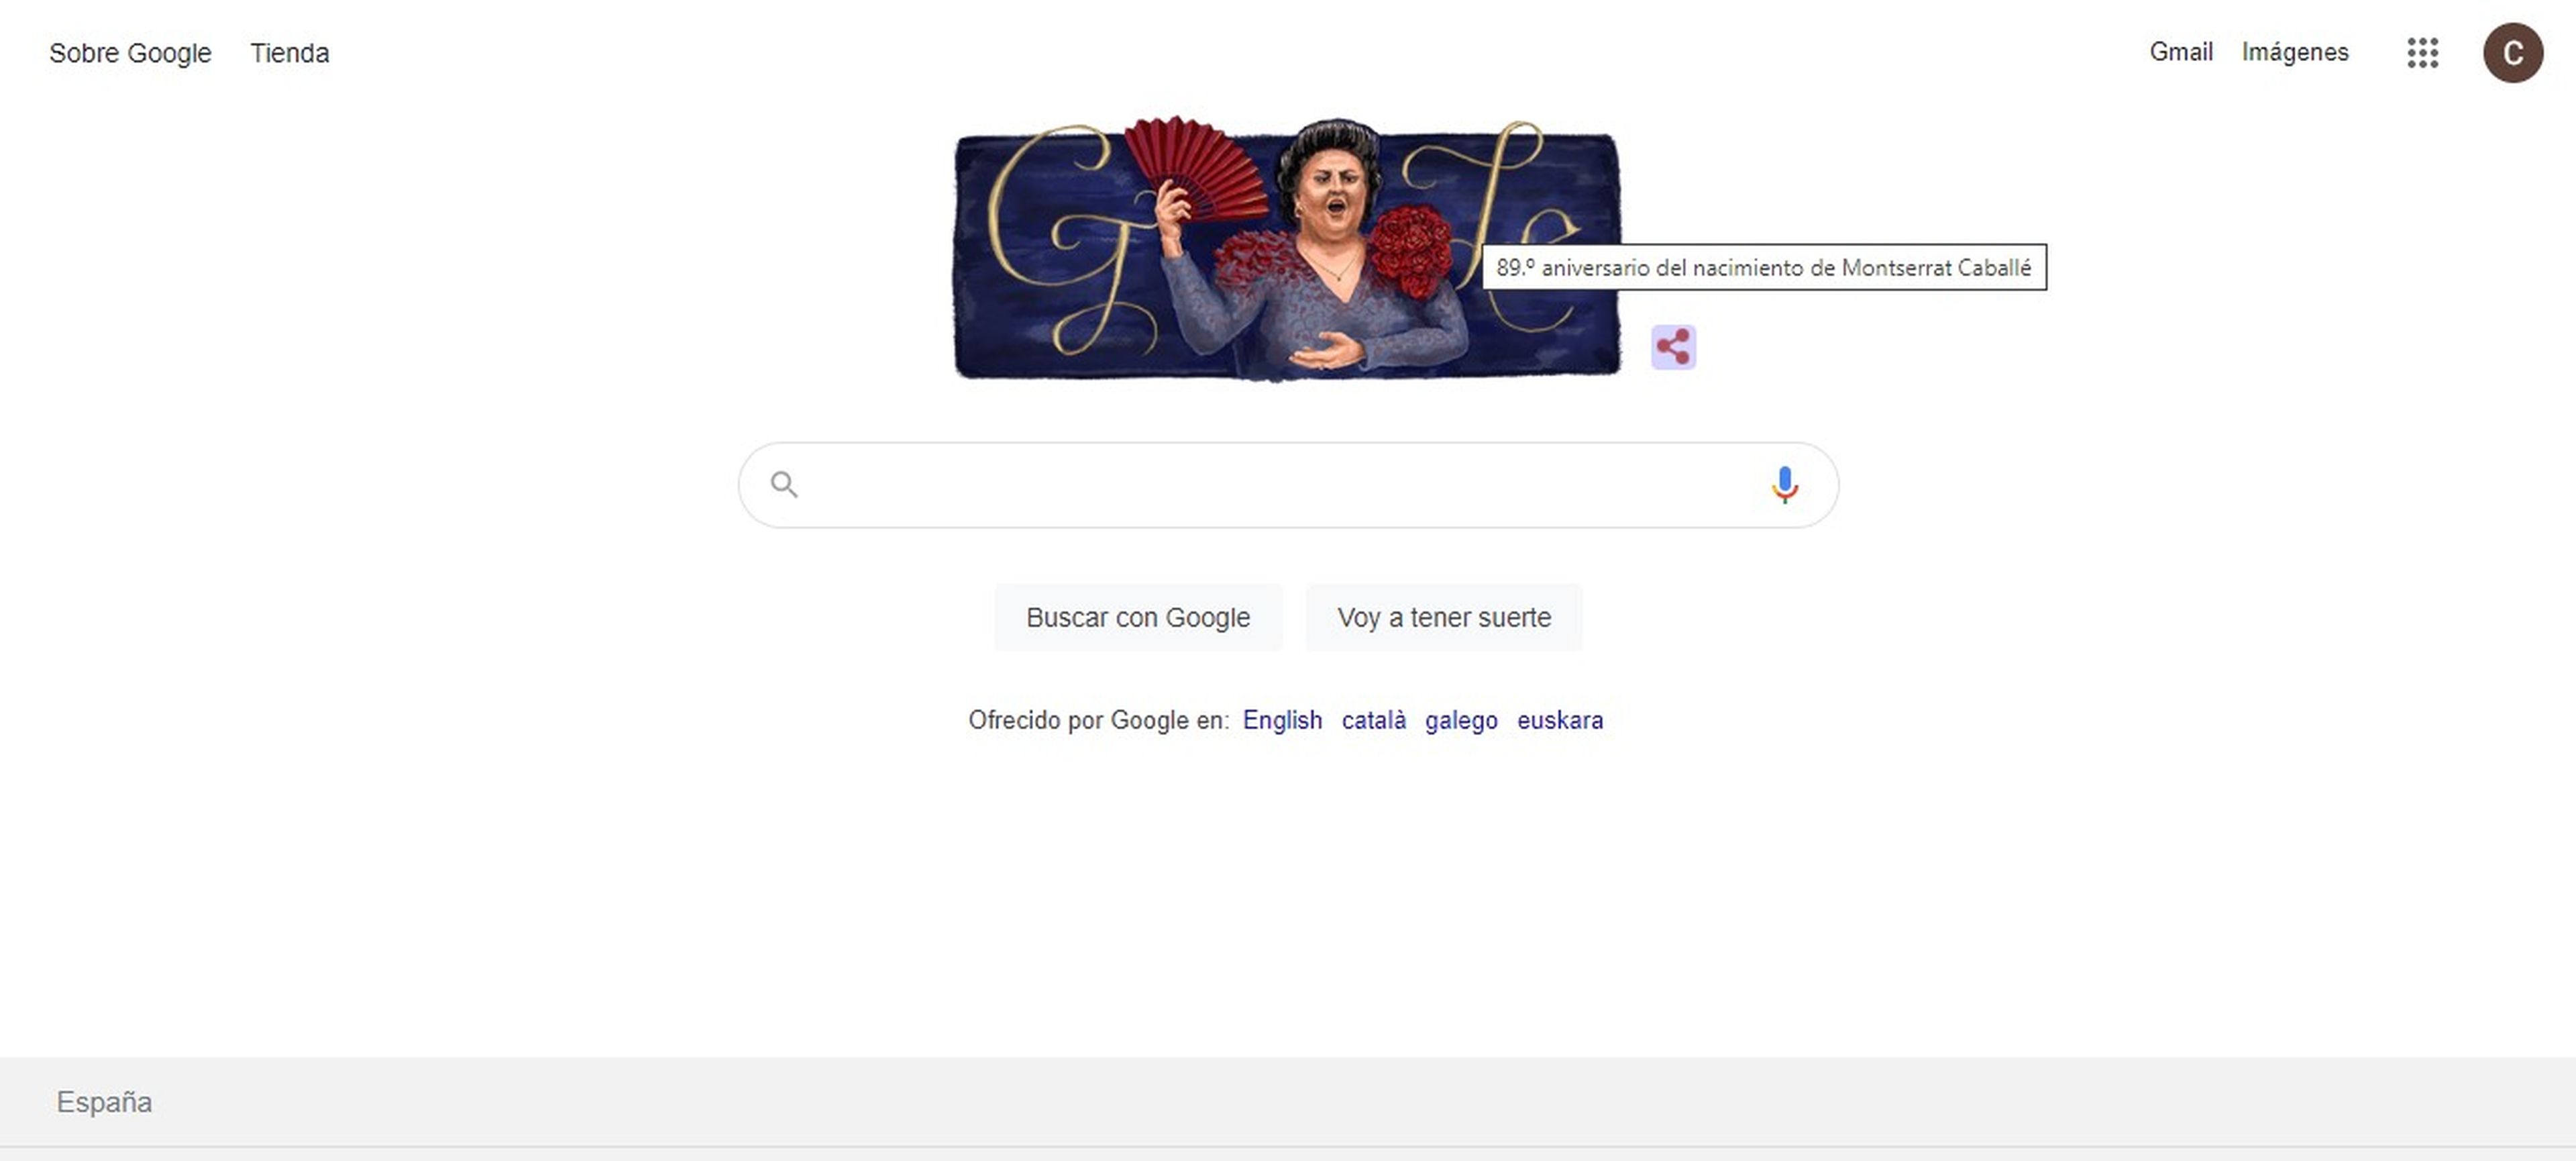 Google dedica a Montserrat Caballé el Doodle de hoy por su 89º aniversario  | Computer Hoy